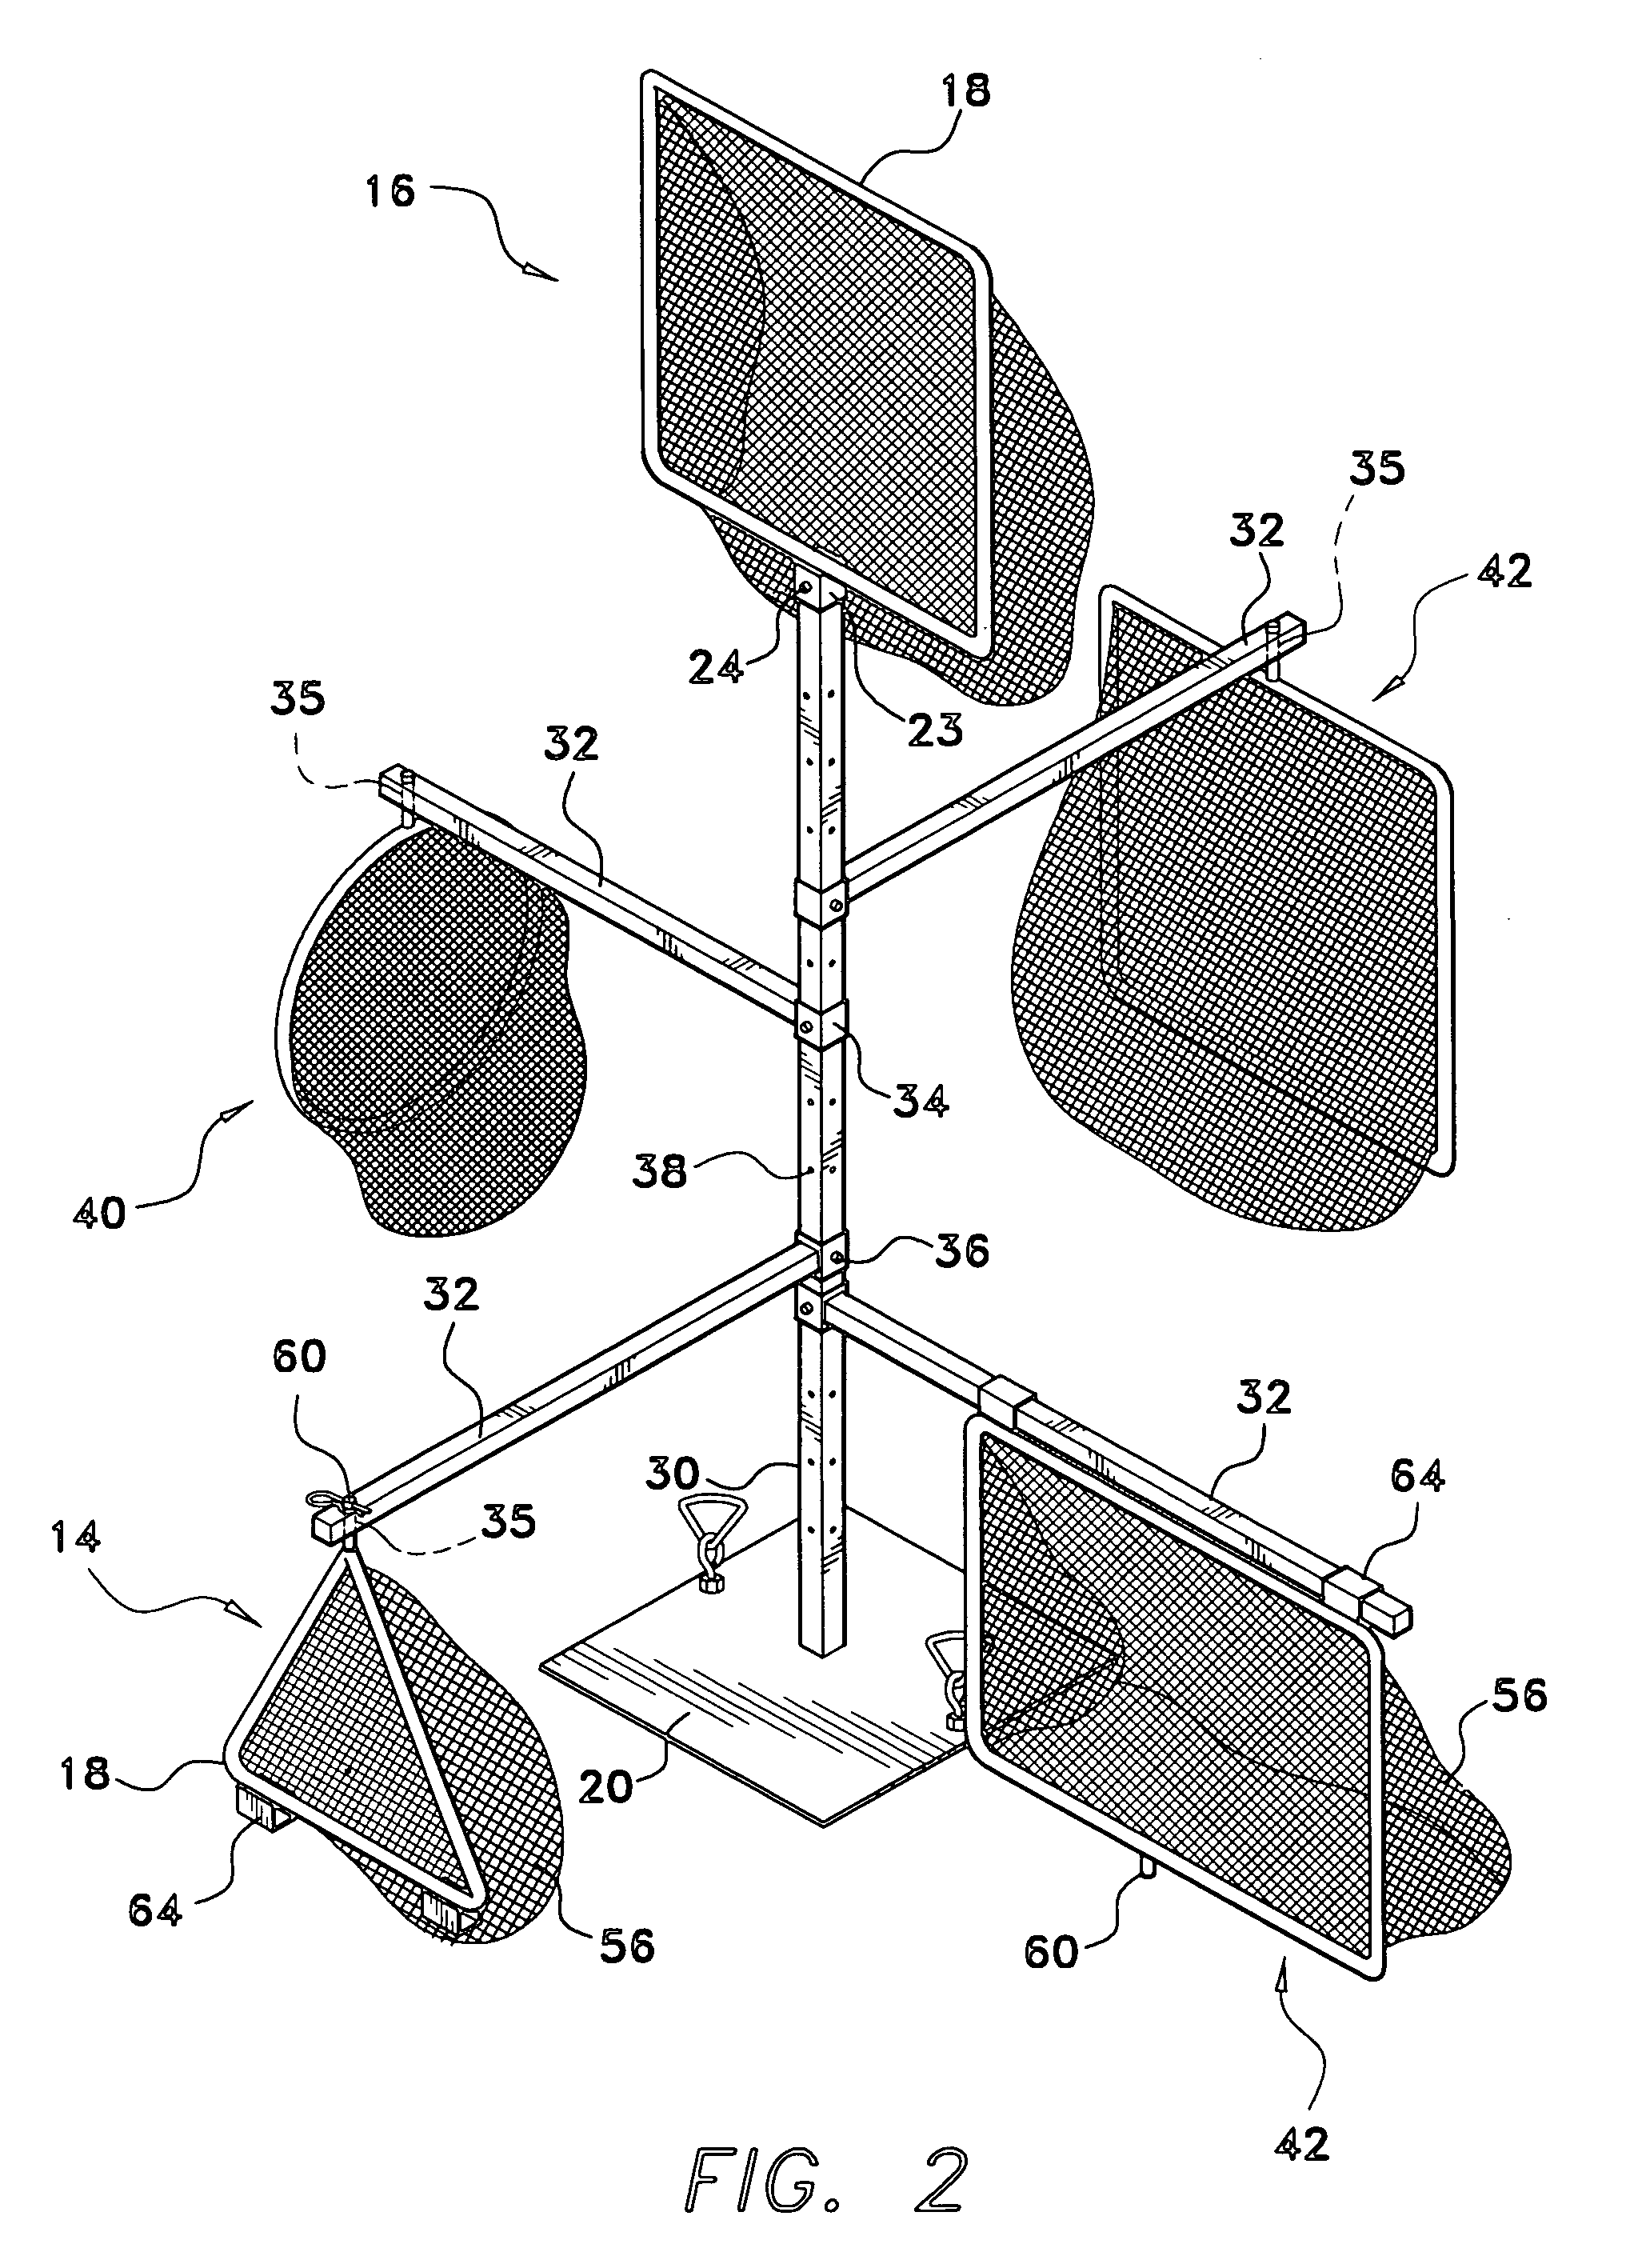 Interchangeable modular ball game apparatus